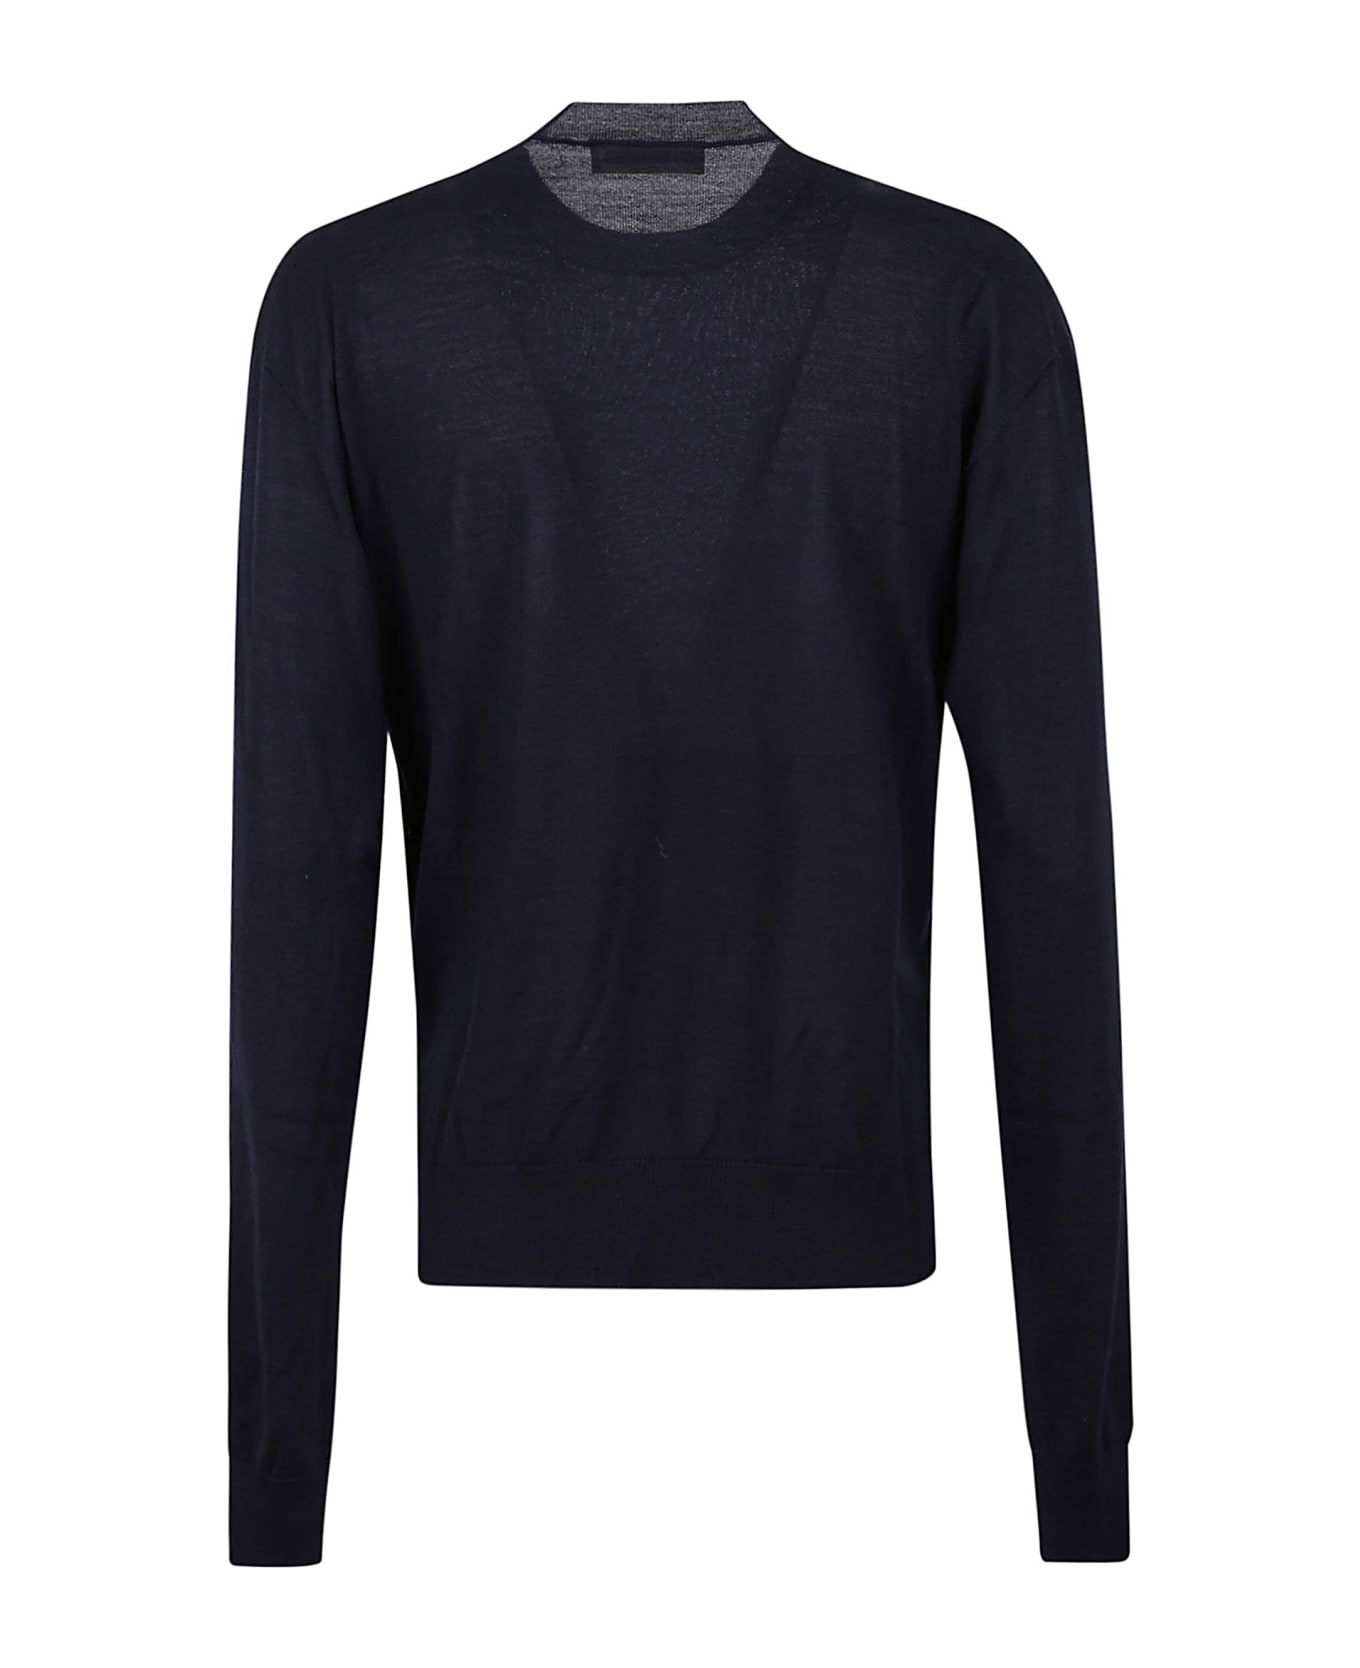 Jil Sander Sweater Cn Ls - Dark Blue ニットウェア